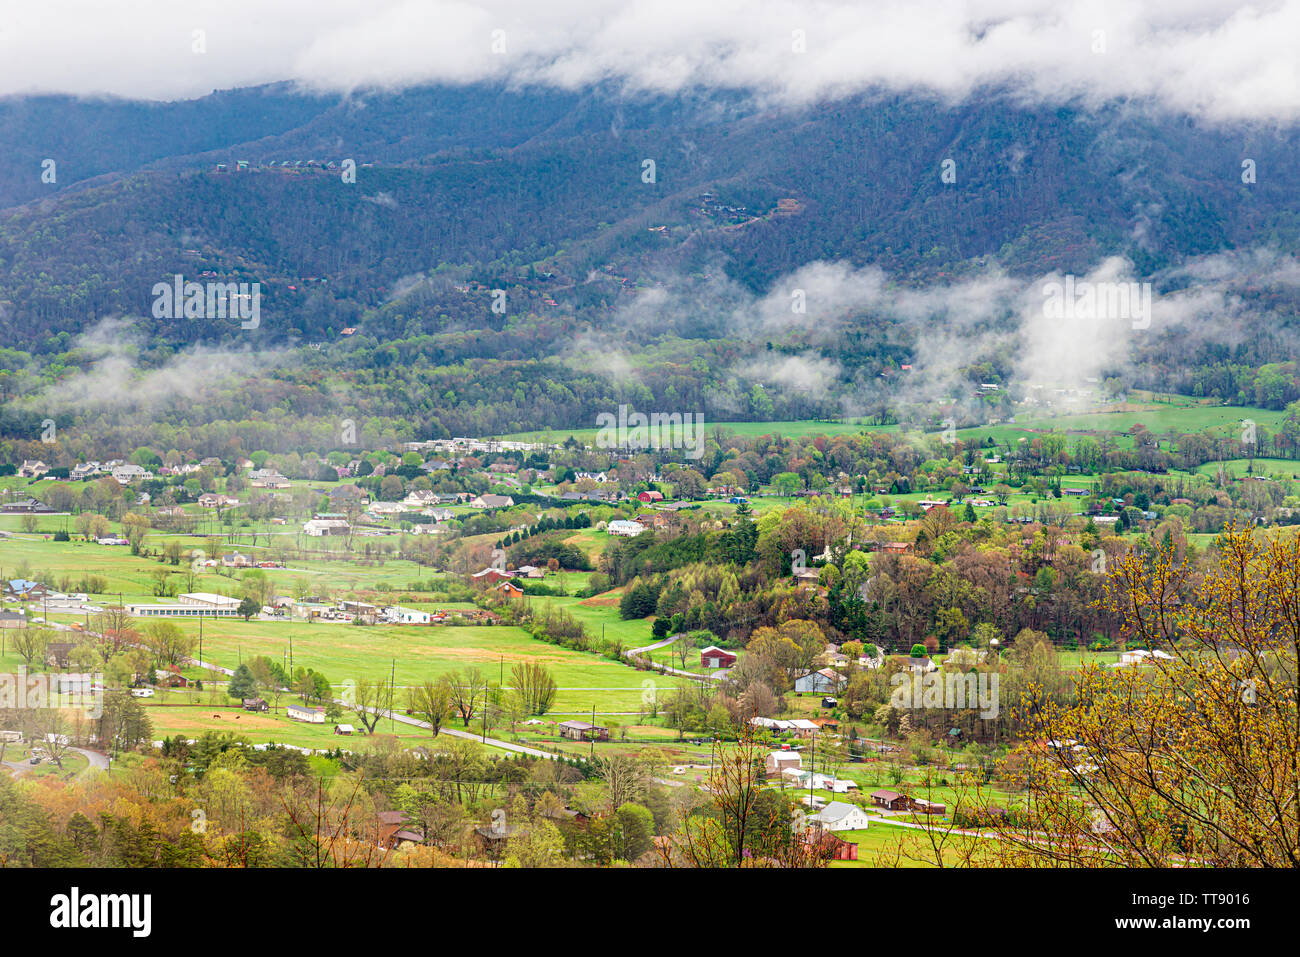 Tiré d'un panoramique horizontal Smoky Mountain Valley communauté rurale. Banque D'Images